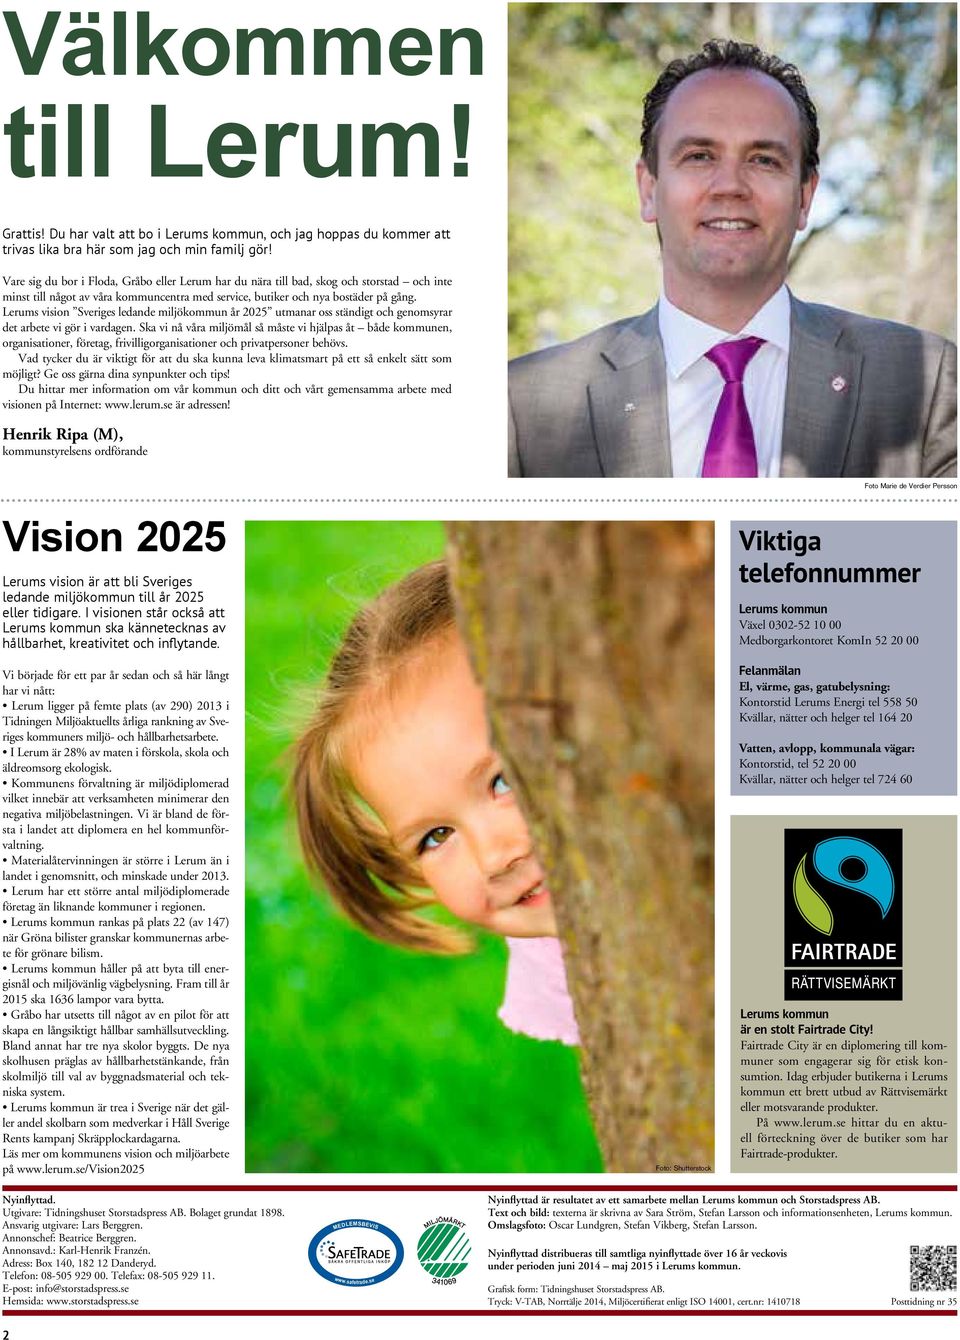 Lerums vision Sveriges ledande miljökommun år 05 utmanar oss ständigt och genomsyrar det arbete vi gör i vardagen.